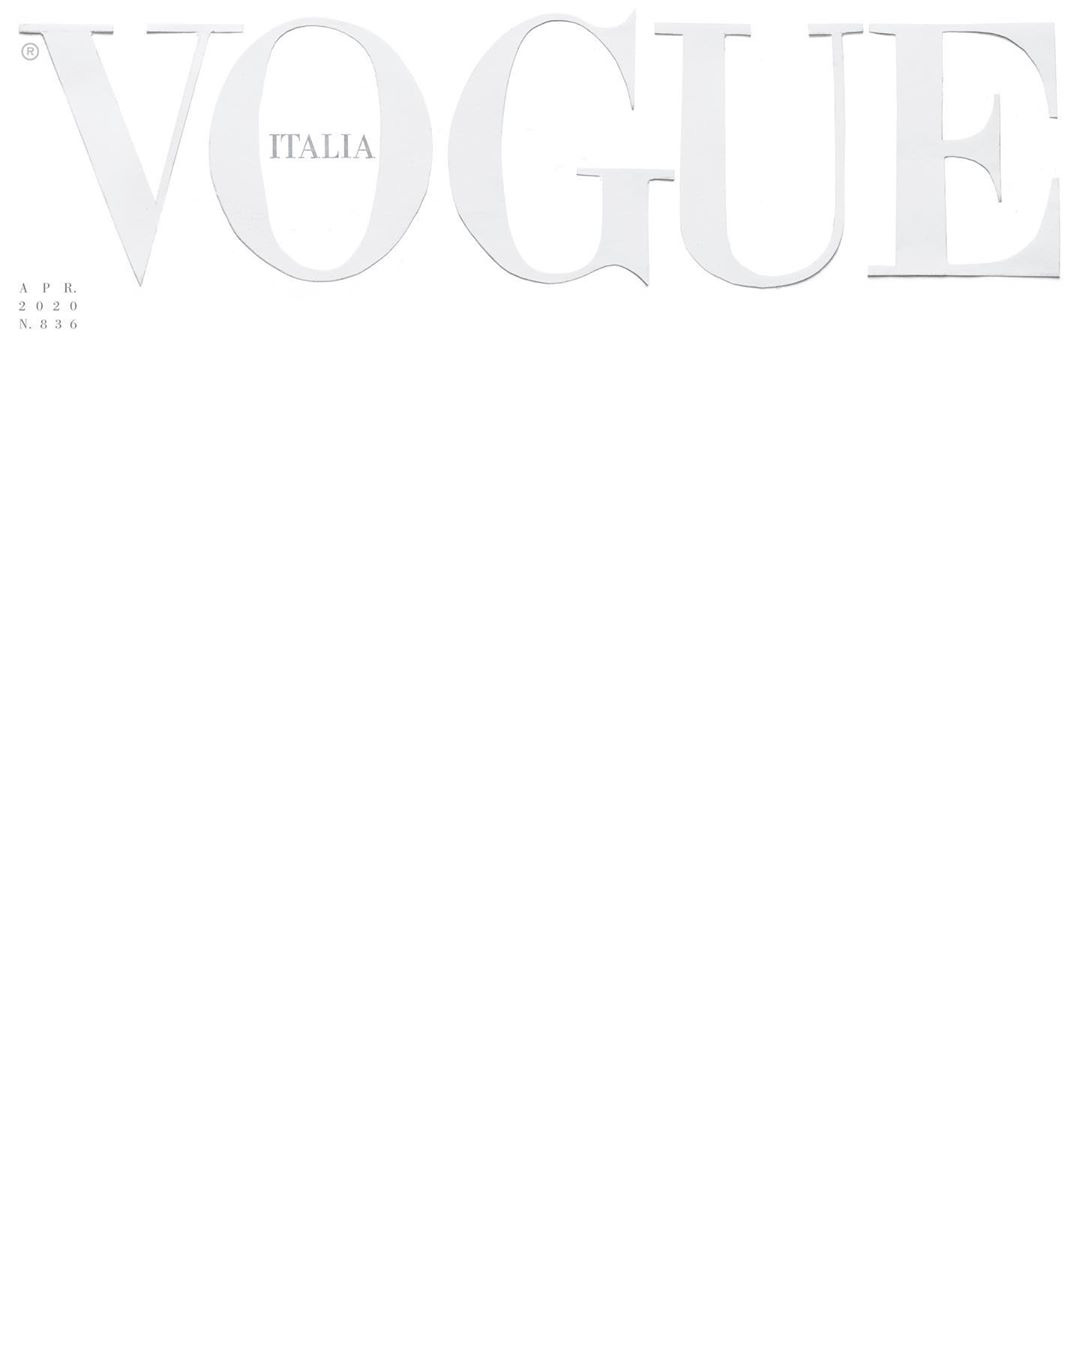 Trang bìa trắng Vogue Ý là một sự kết hợp tuyệt vời giữa vẻ đẹp thanh nhã và sự sang trọng. Hãy chiêm ngưỡng hình ảnh này để tìm hiểu thêm về thế giới thời trang và cập nhật xu hướng mới nhất.